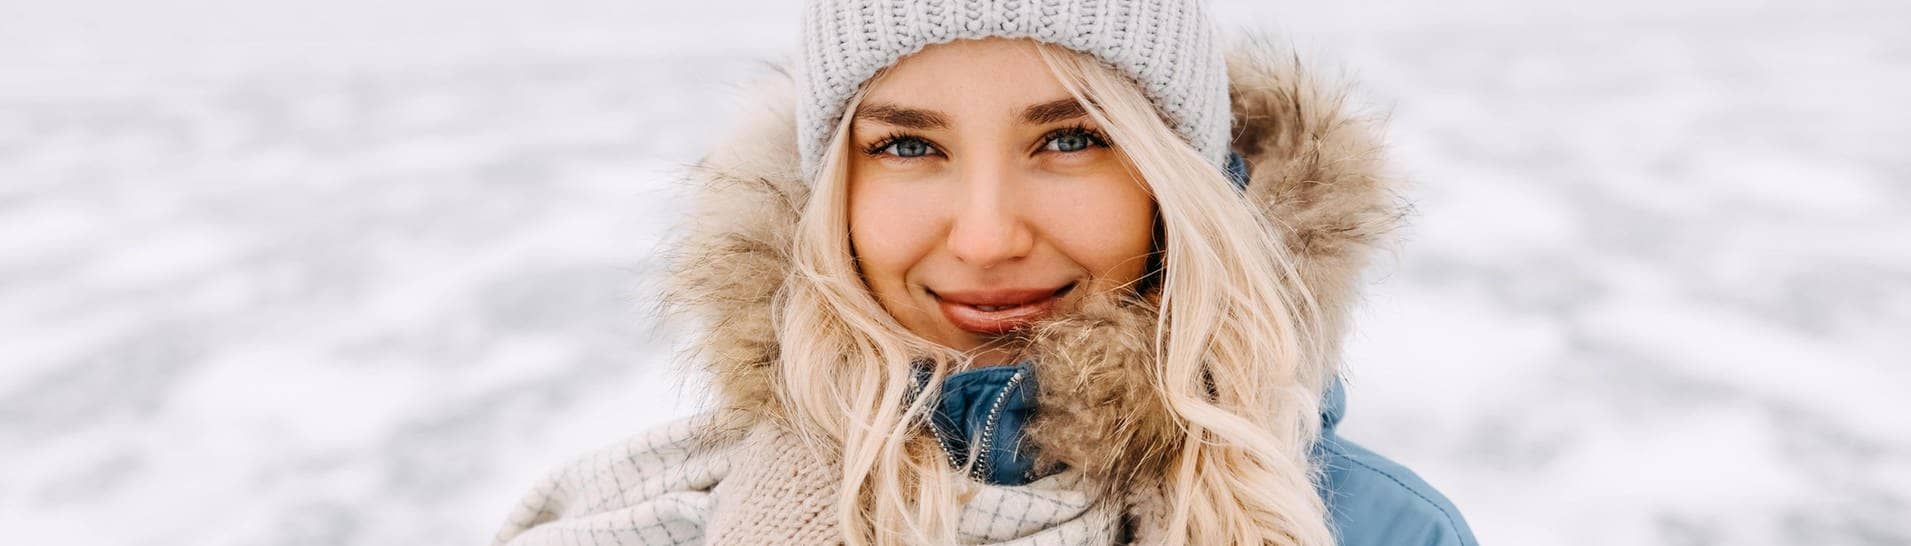 Junge Frau in Winter-Kleidung mit Mütze und Mantel steht in einer Schneelandschaft in der Kälte. Vielleicht denkt sie über Mythen rund um die kalte Jahreszeit nach.